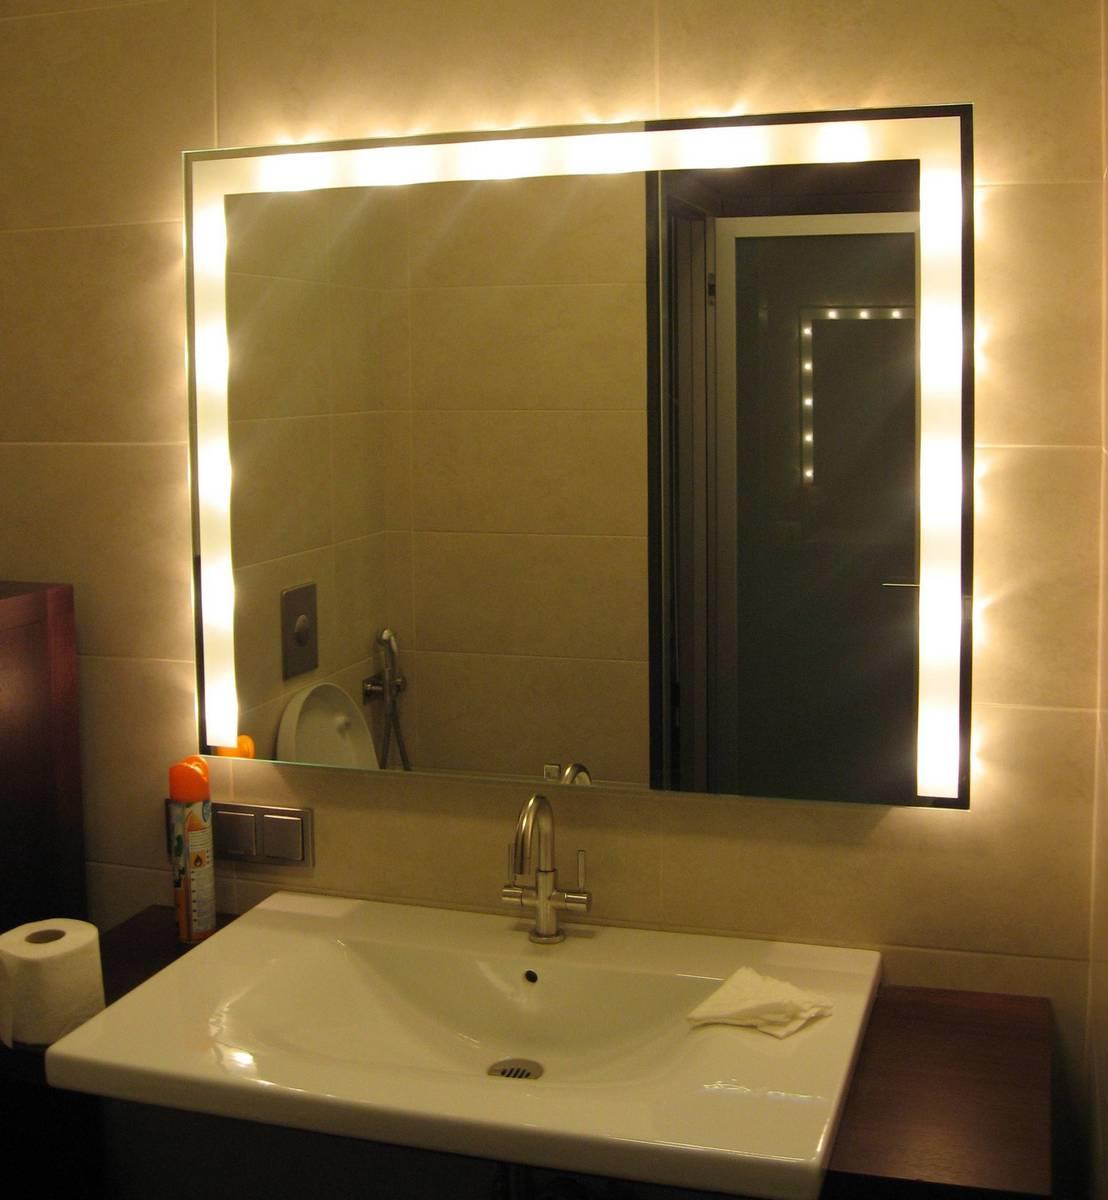 Для отделки зеркала в ванной комнате вполне можно использовать небольшие осветительные приборы